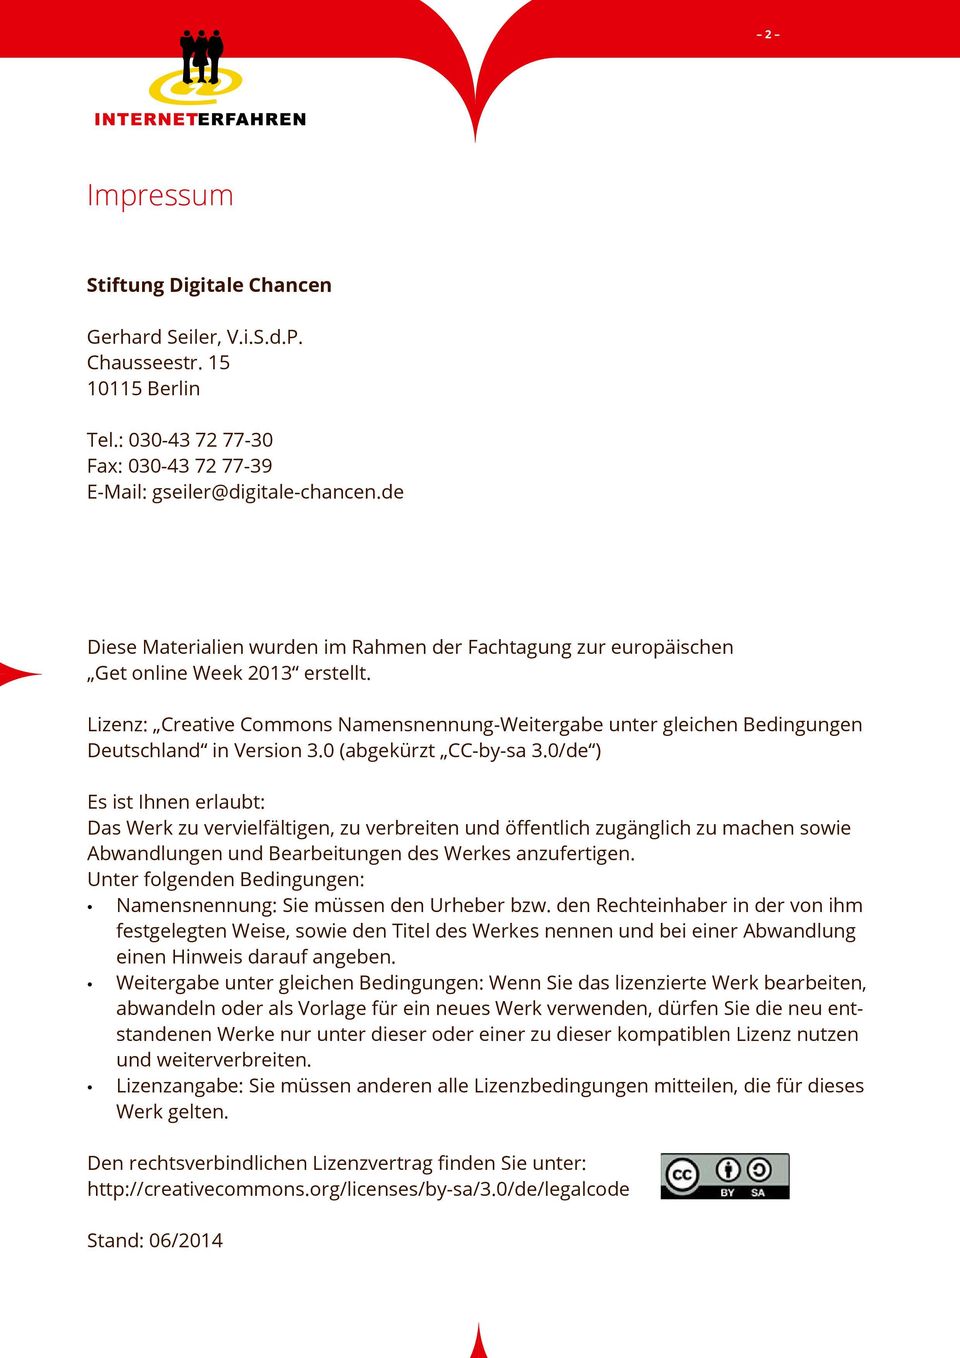 Lizenz: Creative Commons Namensnennung-Weitergabe unter gleichen Bedingungen Deutschland in Version 3.0 (abgekürzt CC-by-sa 3.